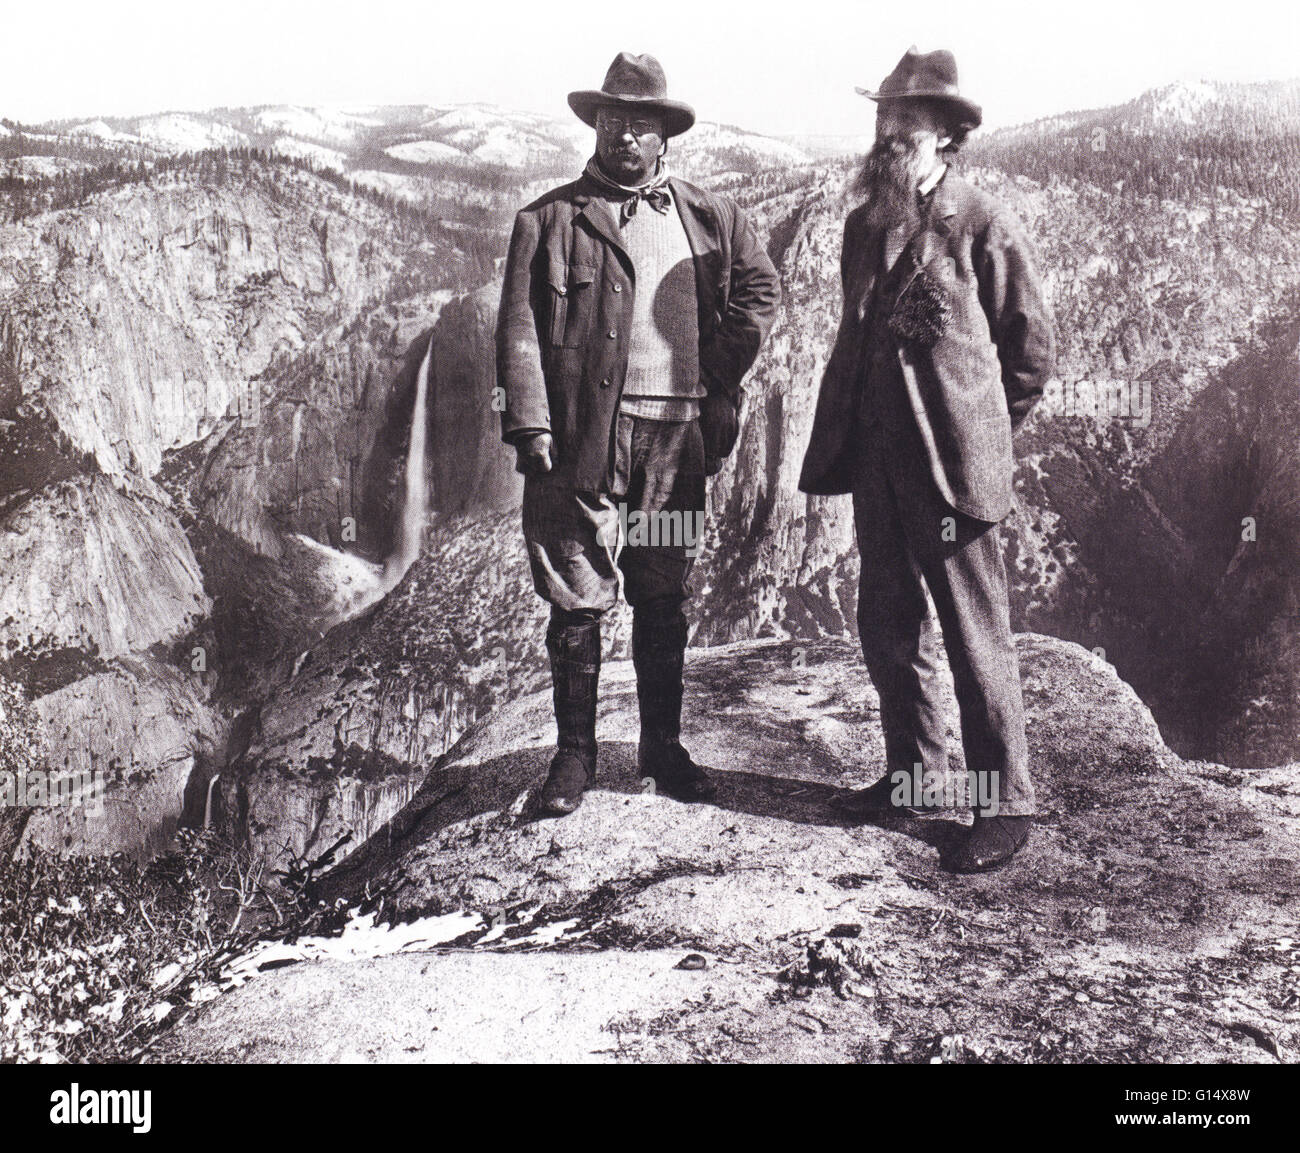 Teddy Roosevelt und John Muir auf Glacier Point, Yosemite, 1903. Theodore "Teddy" Roosevelt (1858-1919) war der 26. Präsident der Vereinigten Staaten (19011-1909). Er ist bekannt für seine üppige Persönlichkeit, Spektrum von Interessen und Errungenschaften, und seine Führer Stockfoto